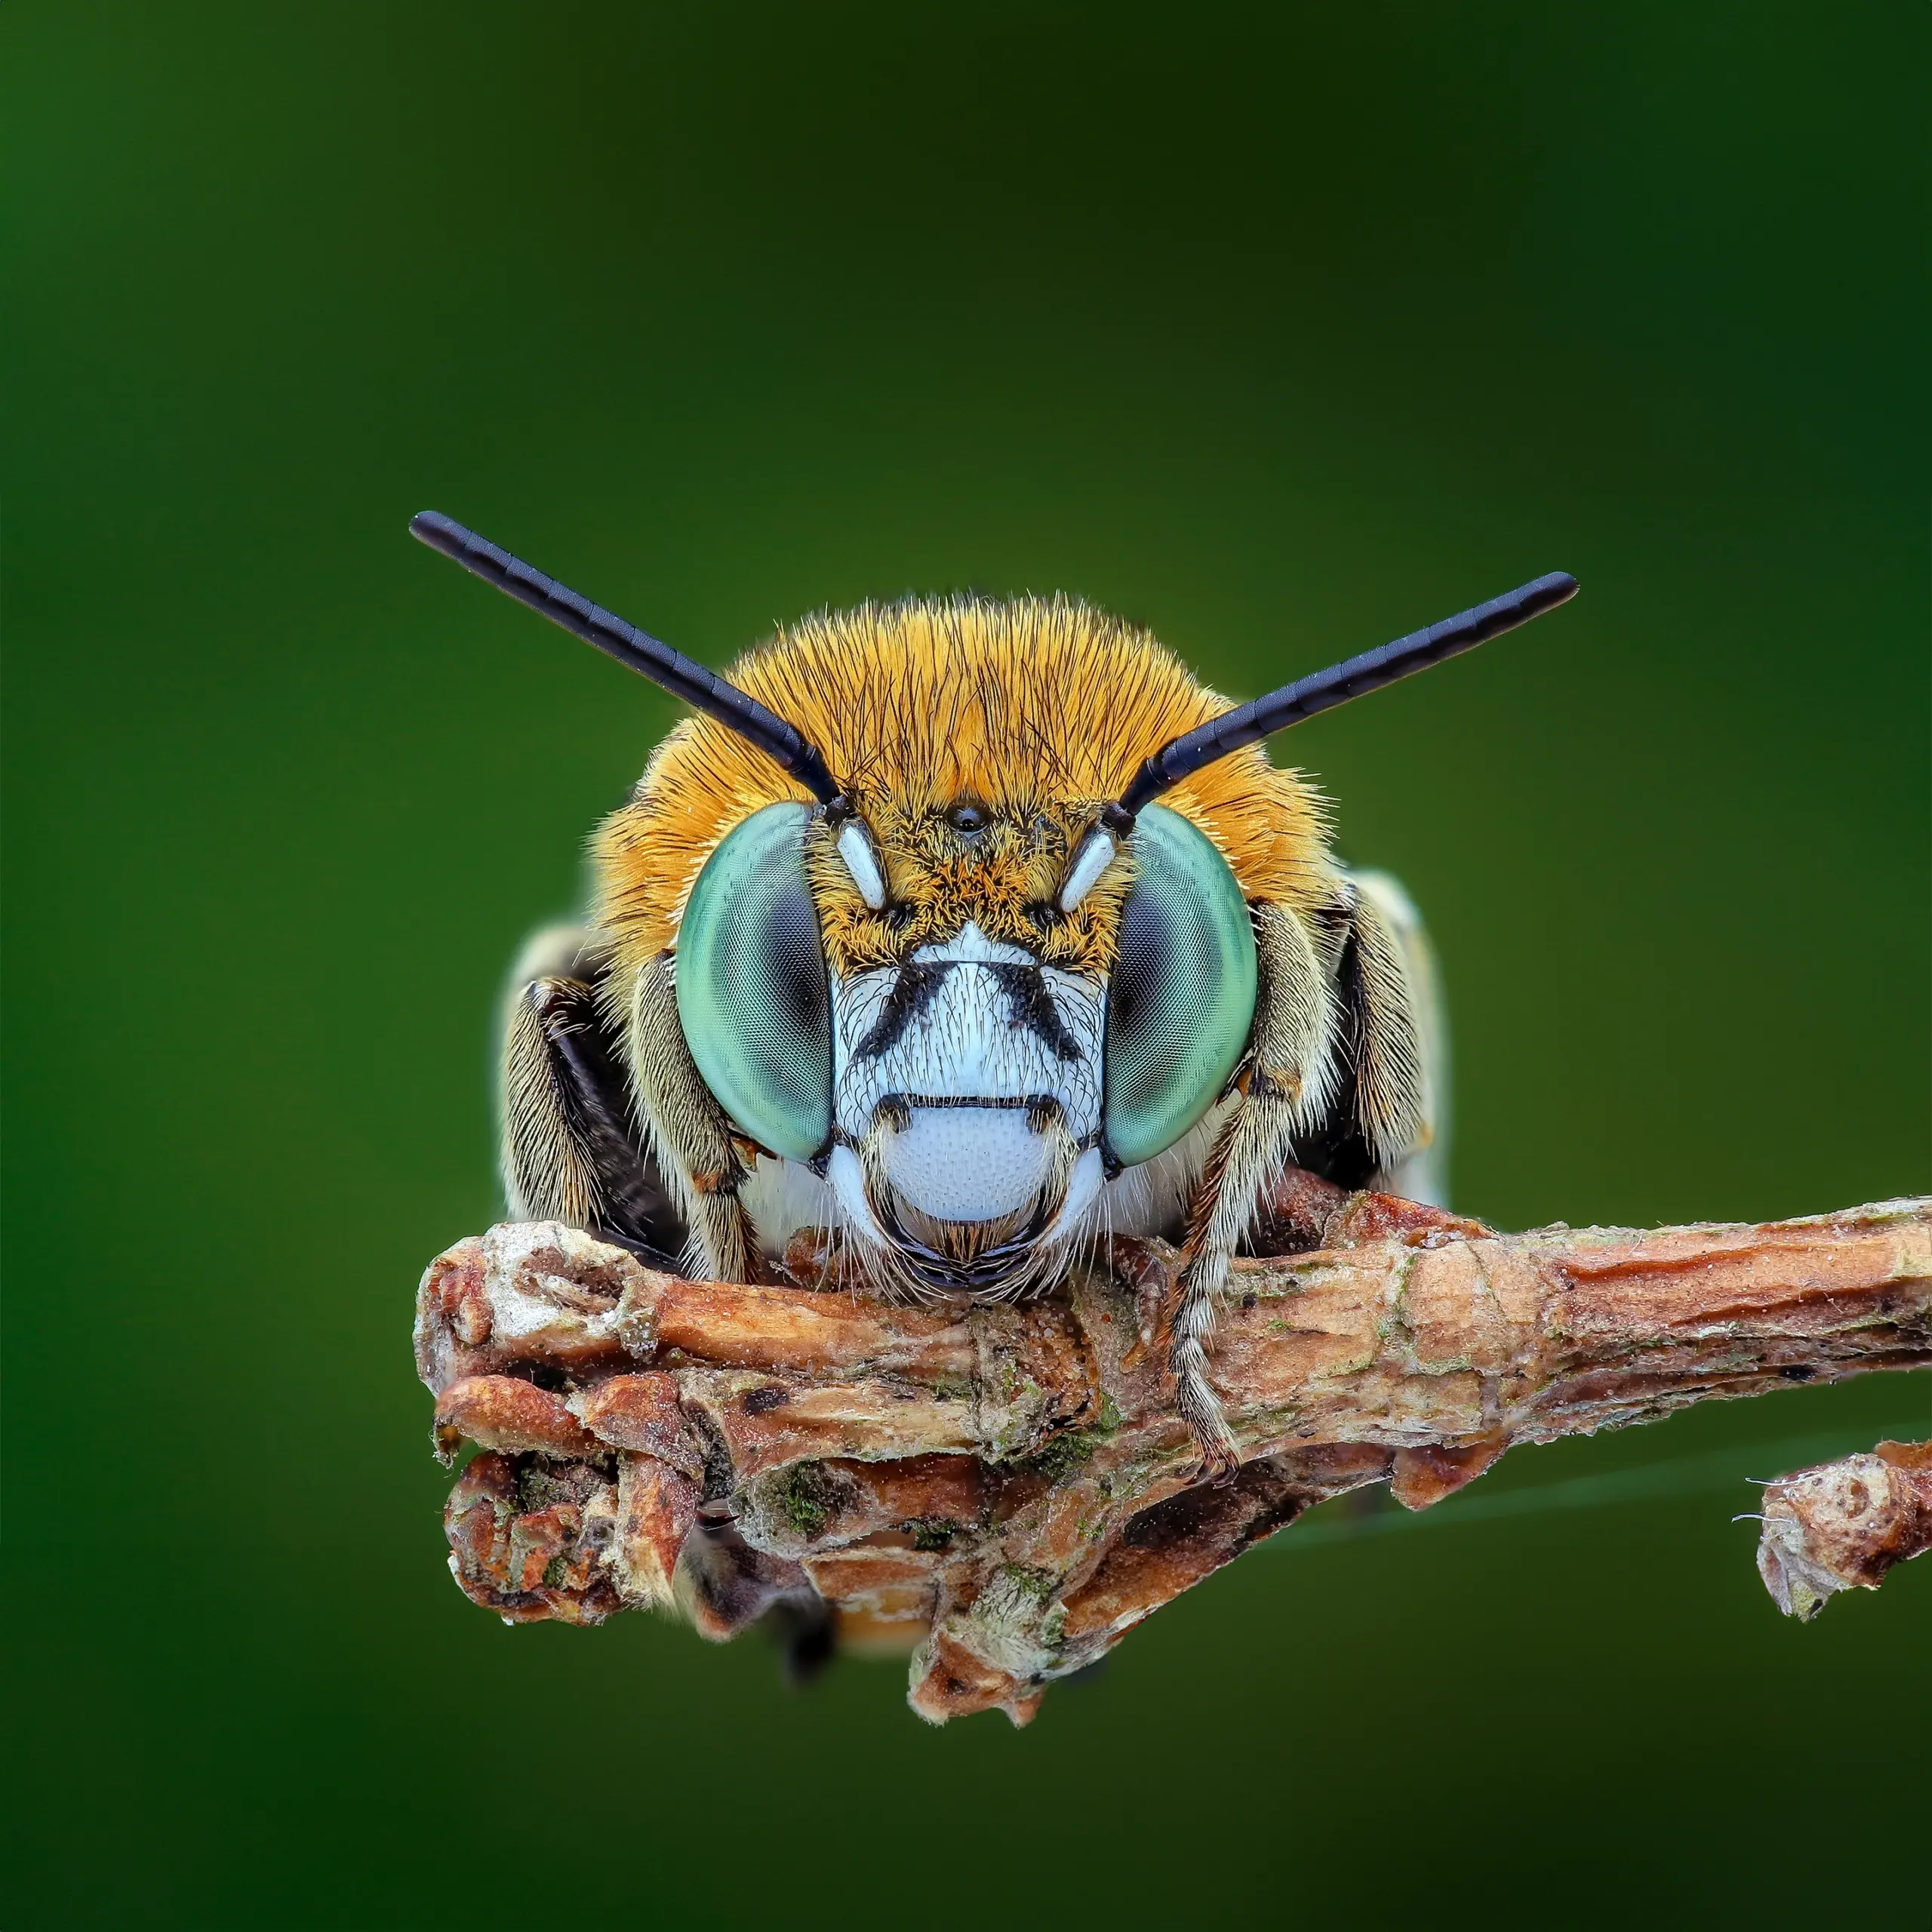 آگاهی در حشرات و سایر حیوانات: اجماع علمی جدید